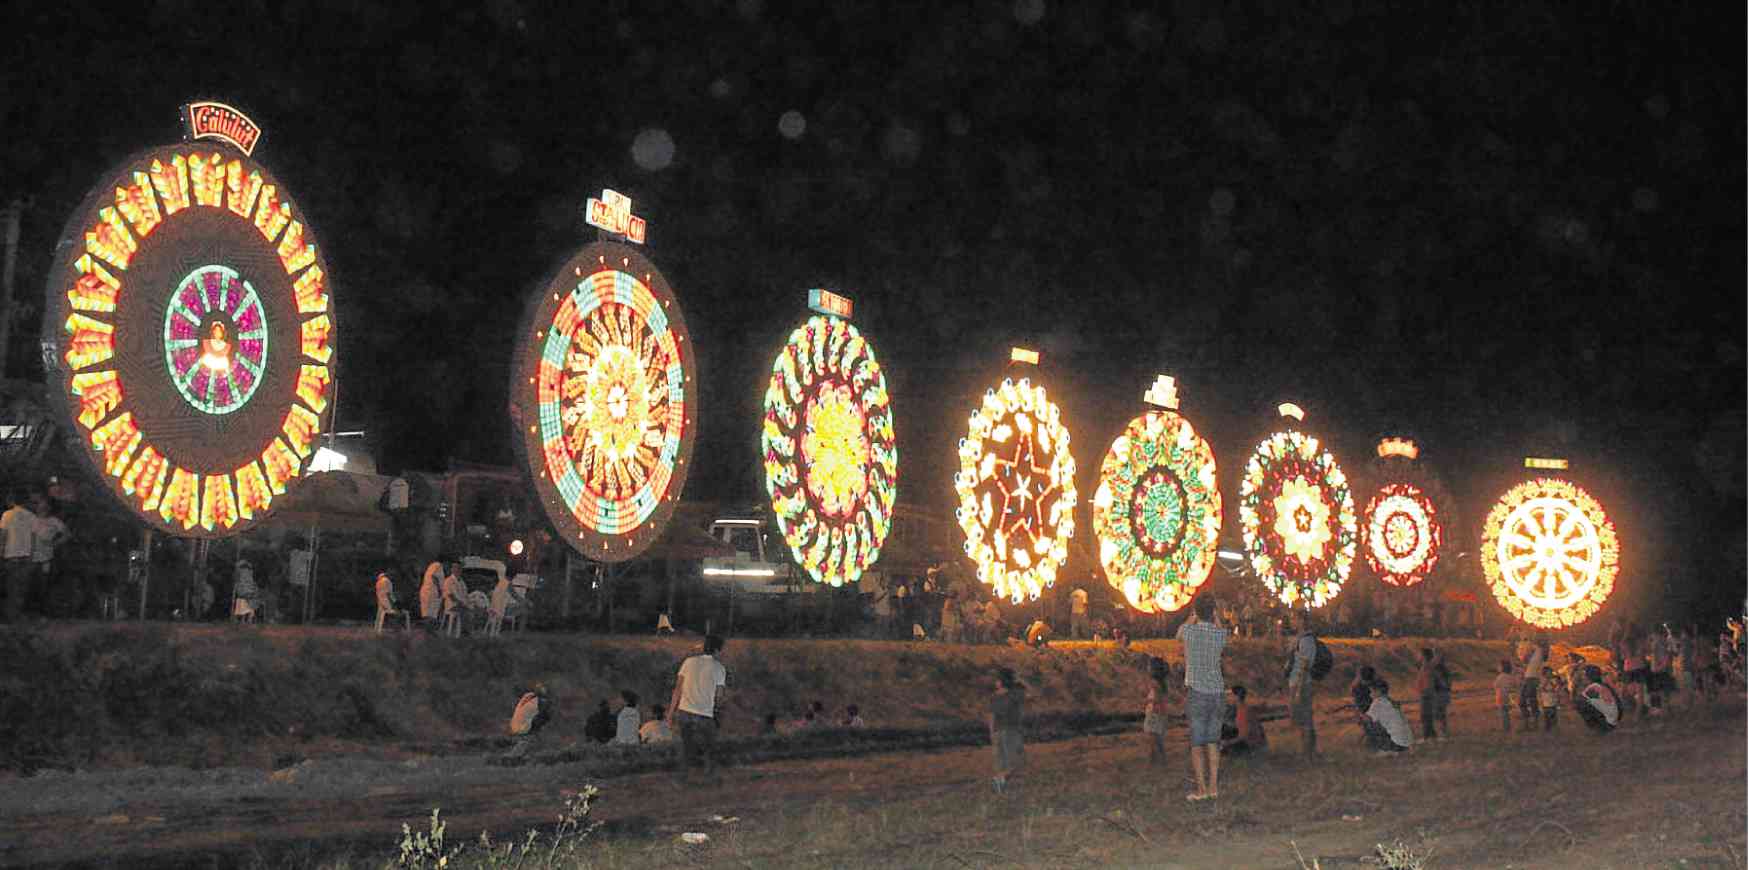 Pampanga craftsmen stick to tradition in lighting giant lanterns